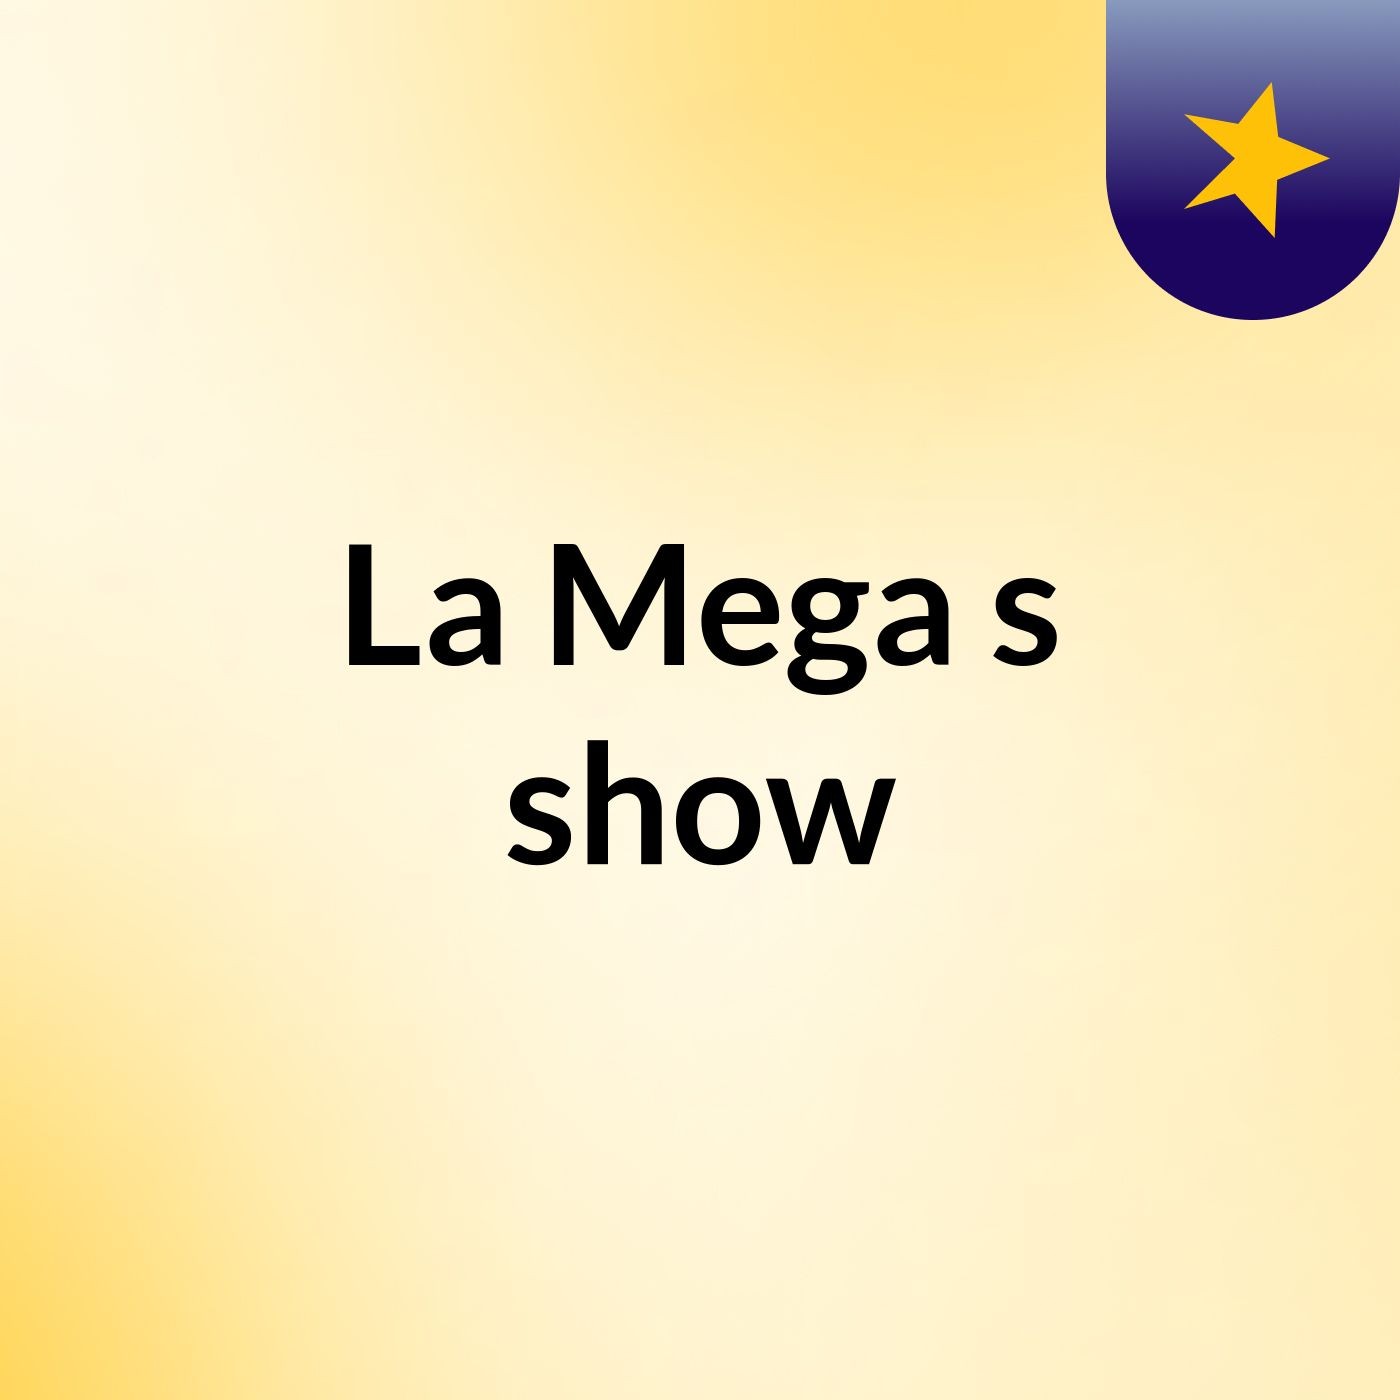 La Mega's show